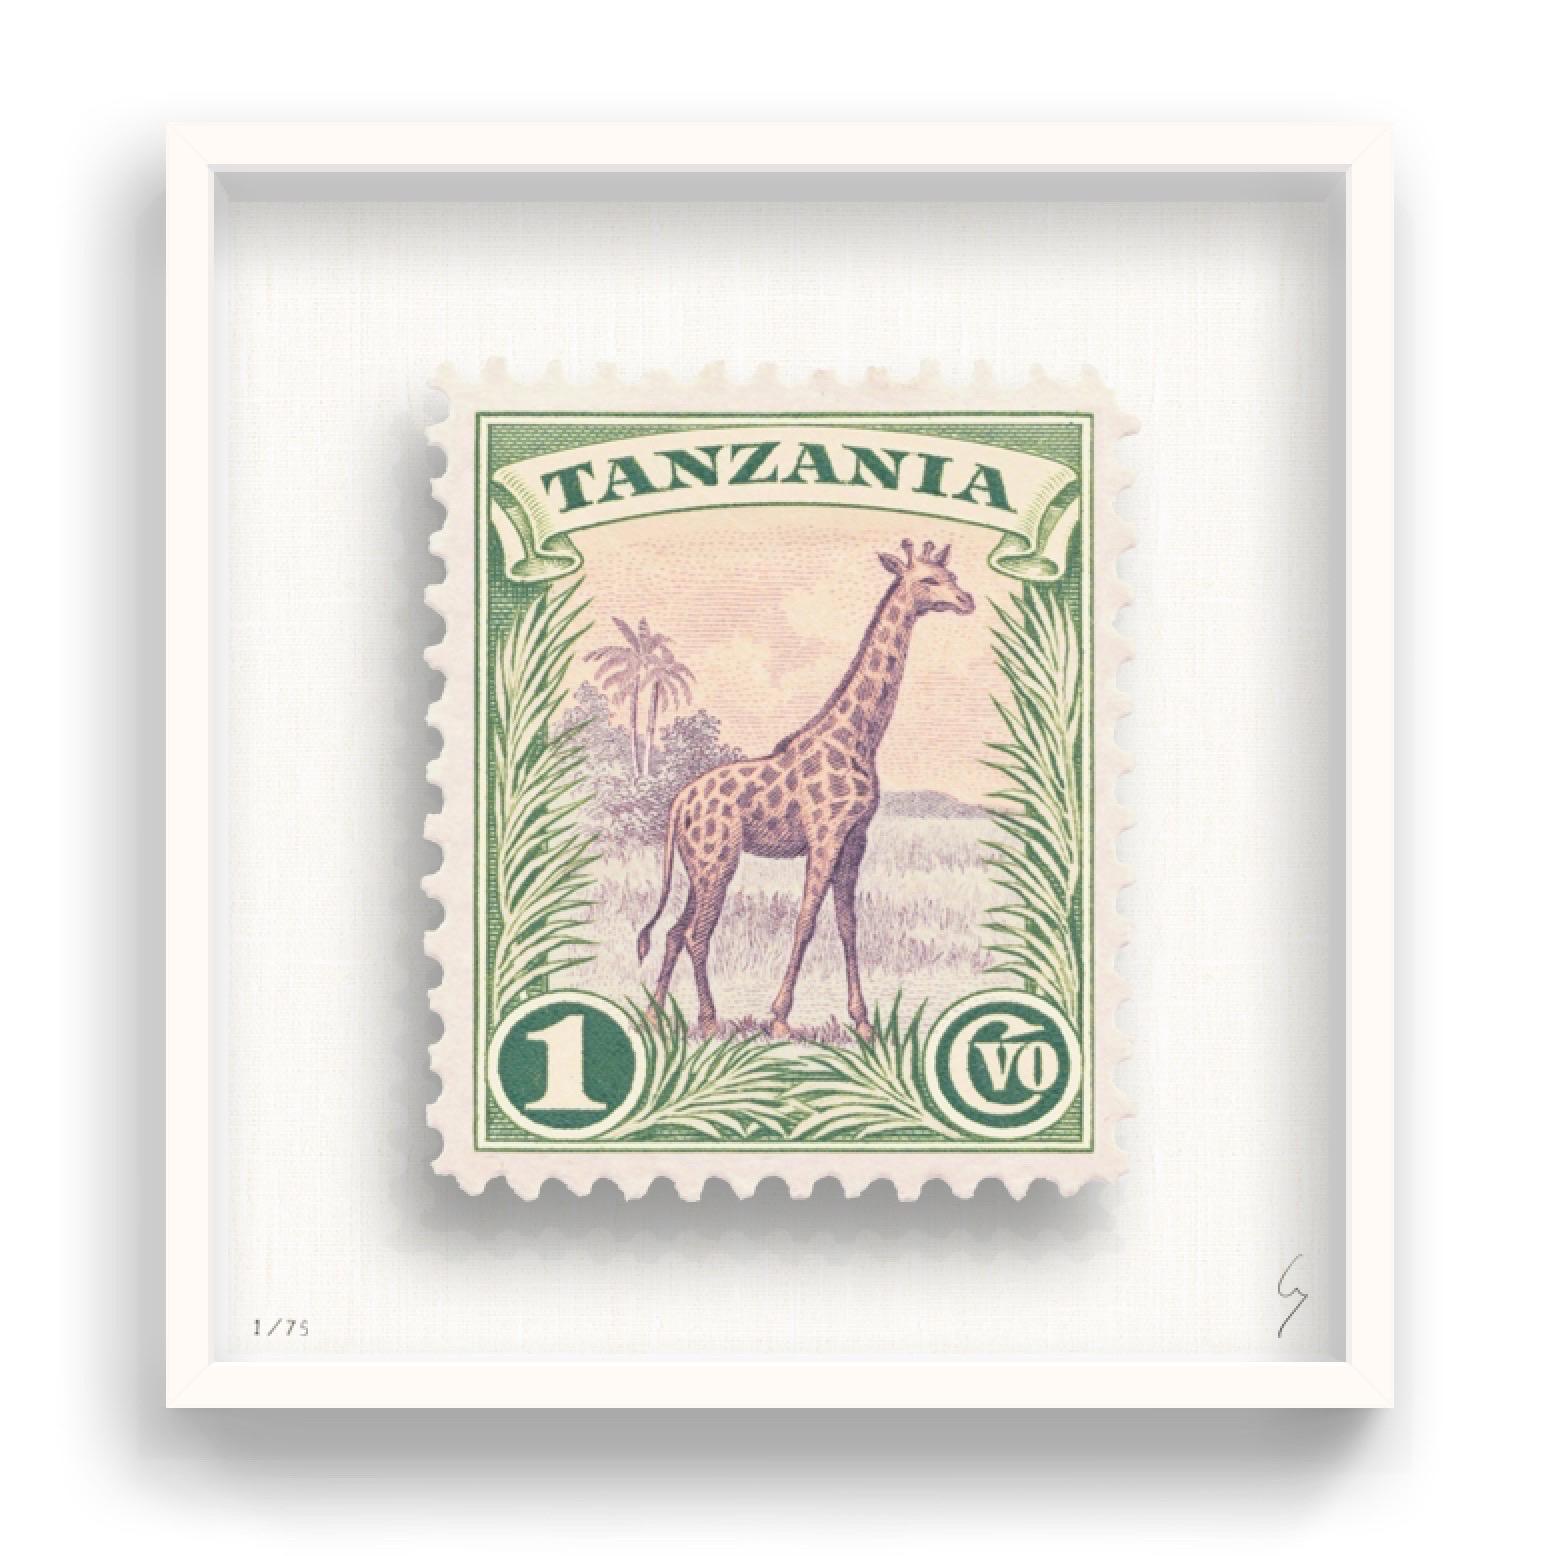 Guy Gee, Tansania (mittelgroß)

Handgravur auf 350gsm auf G.F Smith Karton
31 x 35 cm (12 1/5 x 13 4/5)
Inklusive Rahmen 
Auflage von 75 

Jedes Kunstwerk von Guy wurde auf der Grundlage einer Originalbriefmarke digital nachgebildet. Das von Hand